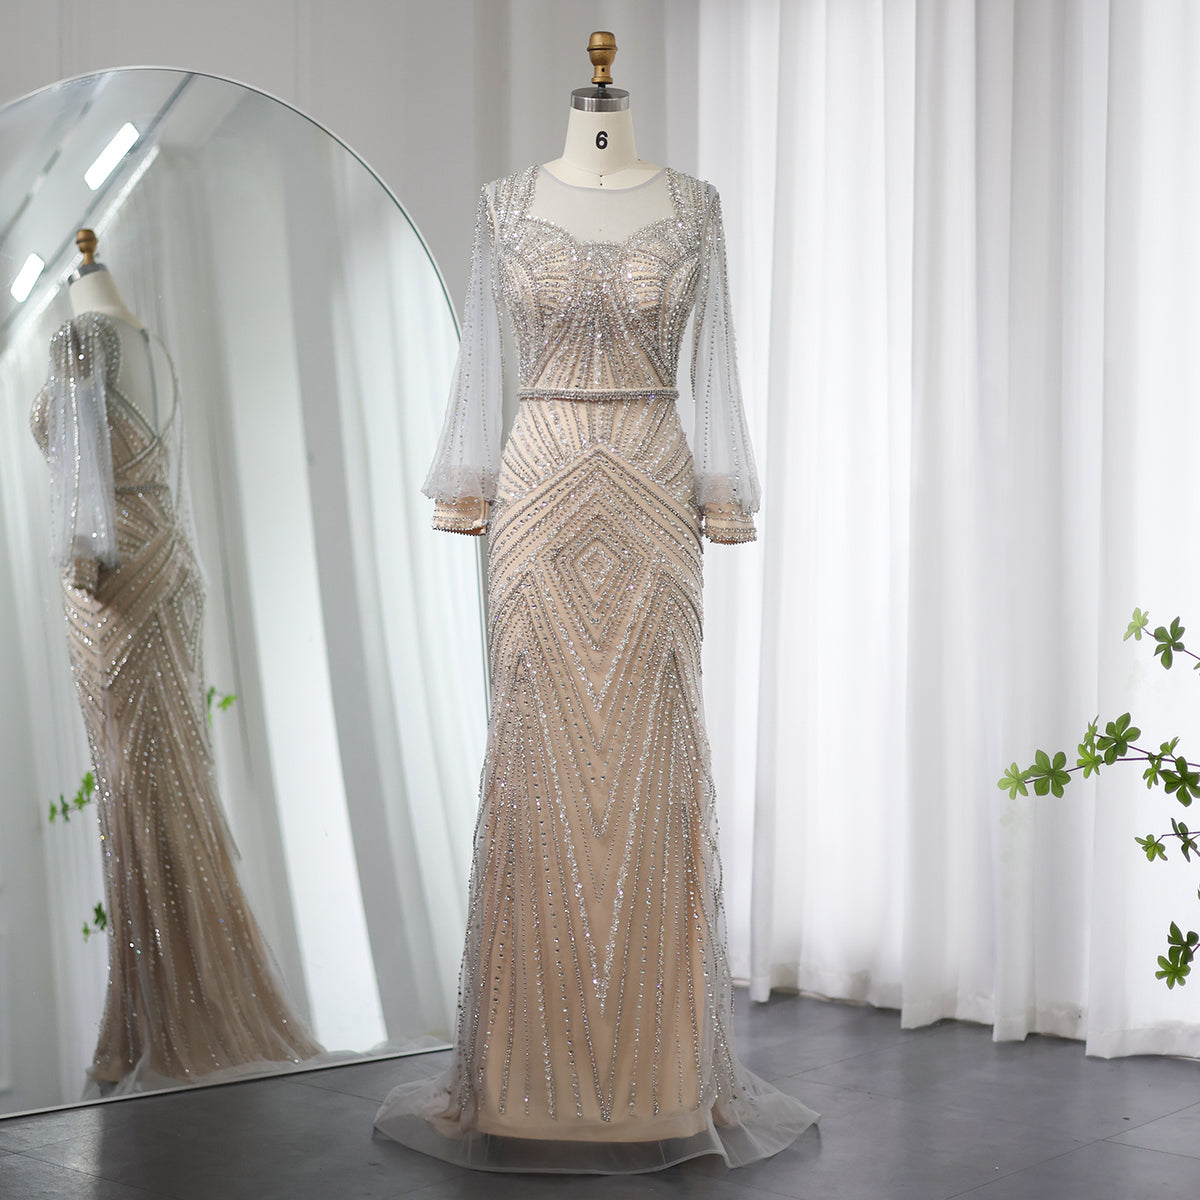 Sharon Said Luxus Silber Nude Meerjungfrau Arabisch Abendkleid Elegante Lange Ärmel Dubai Frauen Hochzeit Formale Party Kleider SS020